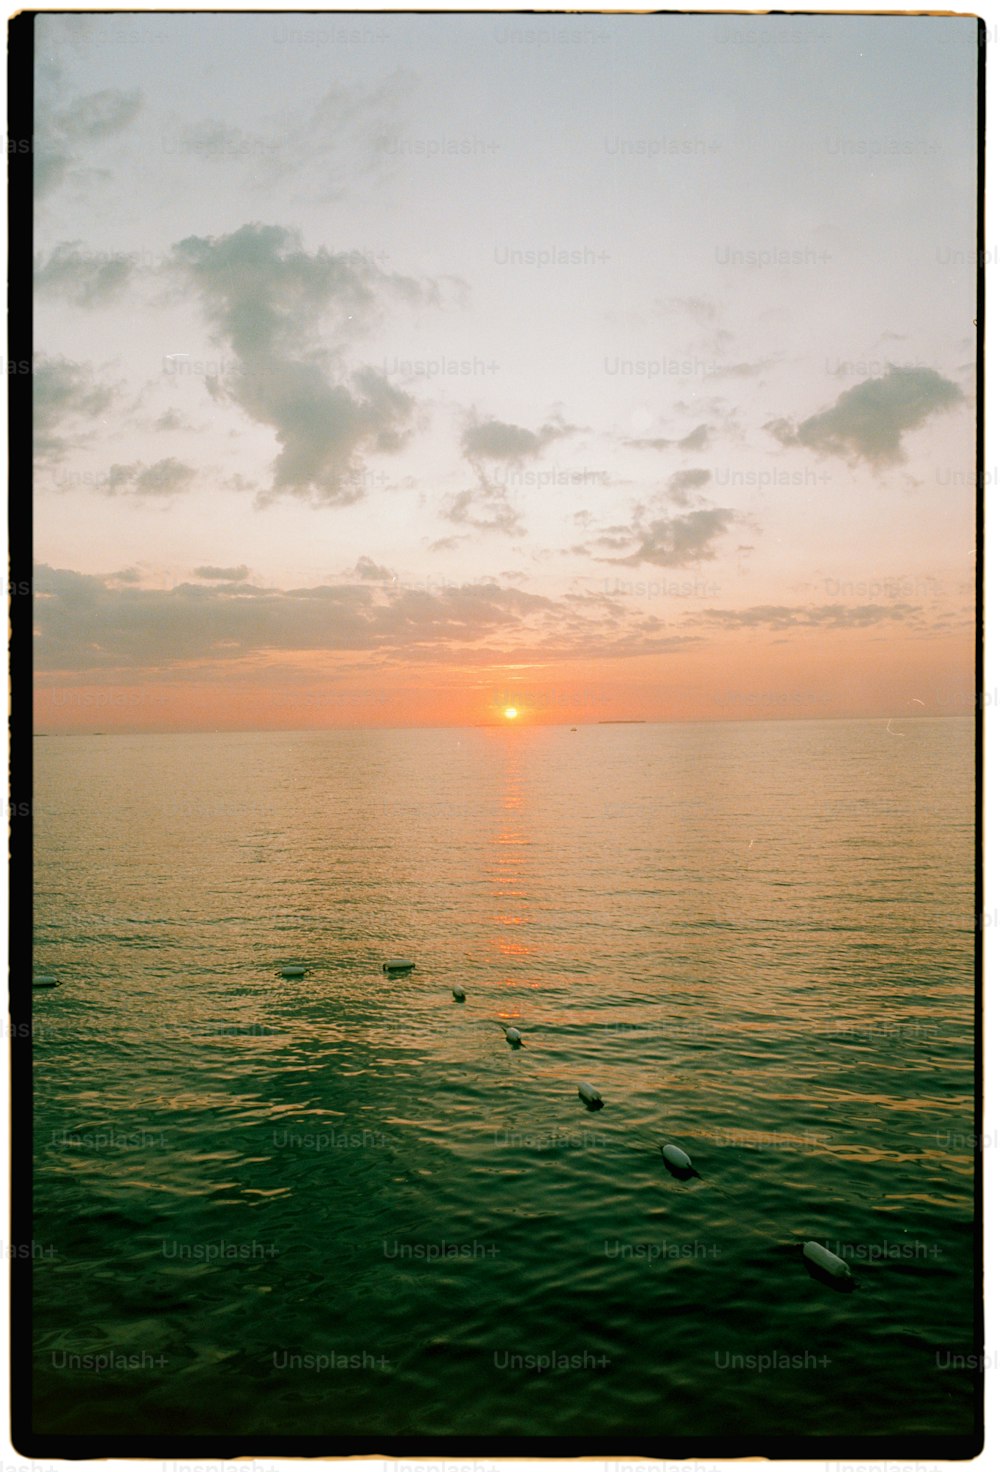 El sol se está poniendo sobre el océano con patos nadando en el agua